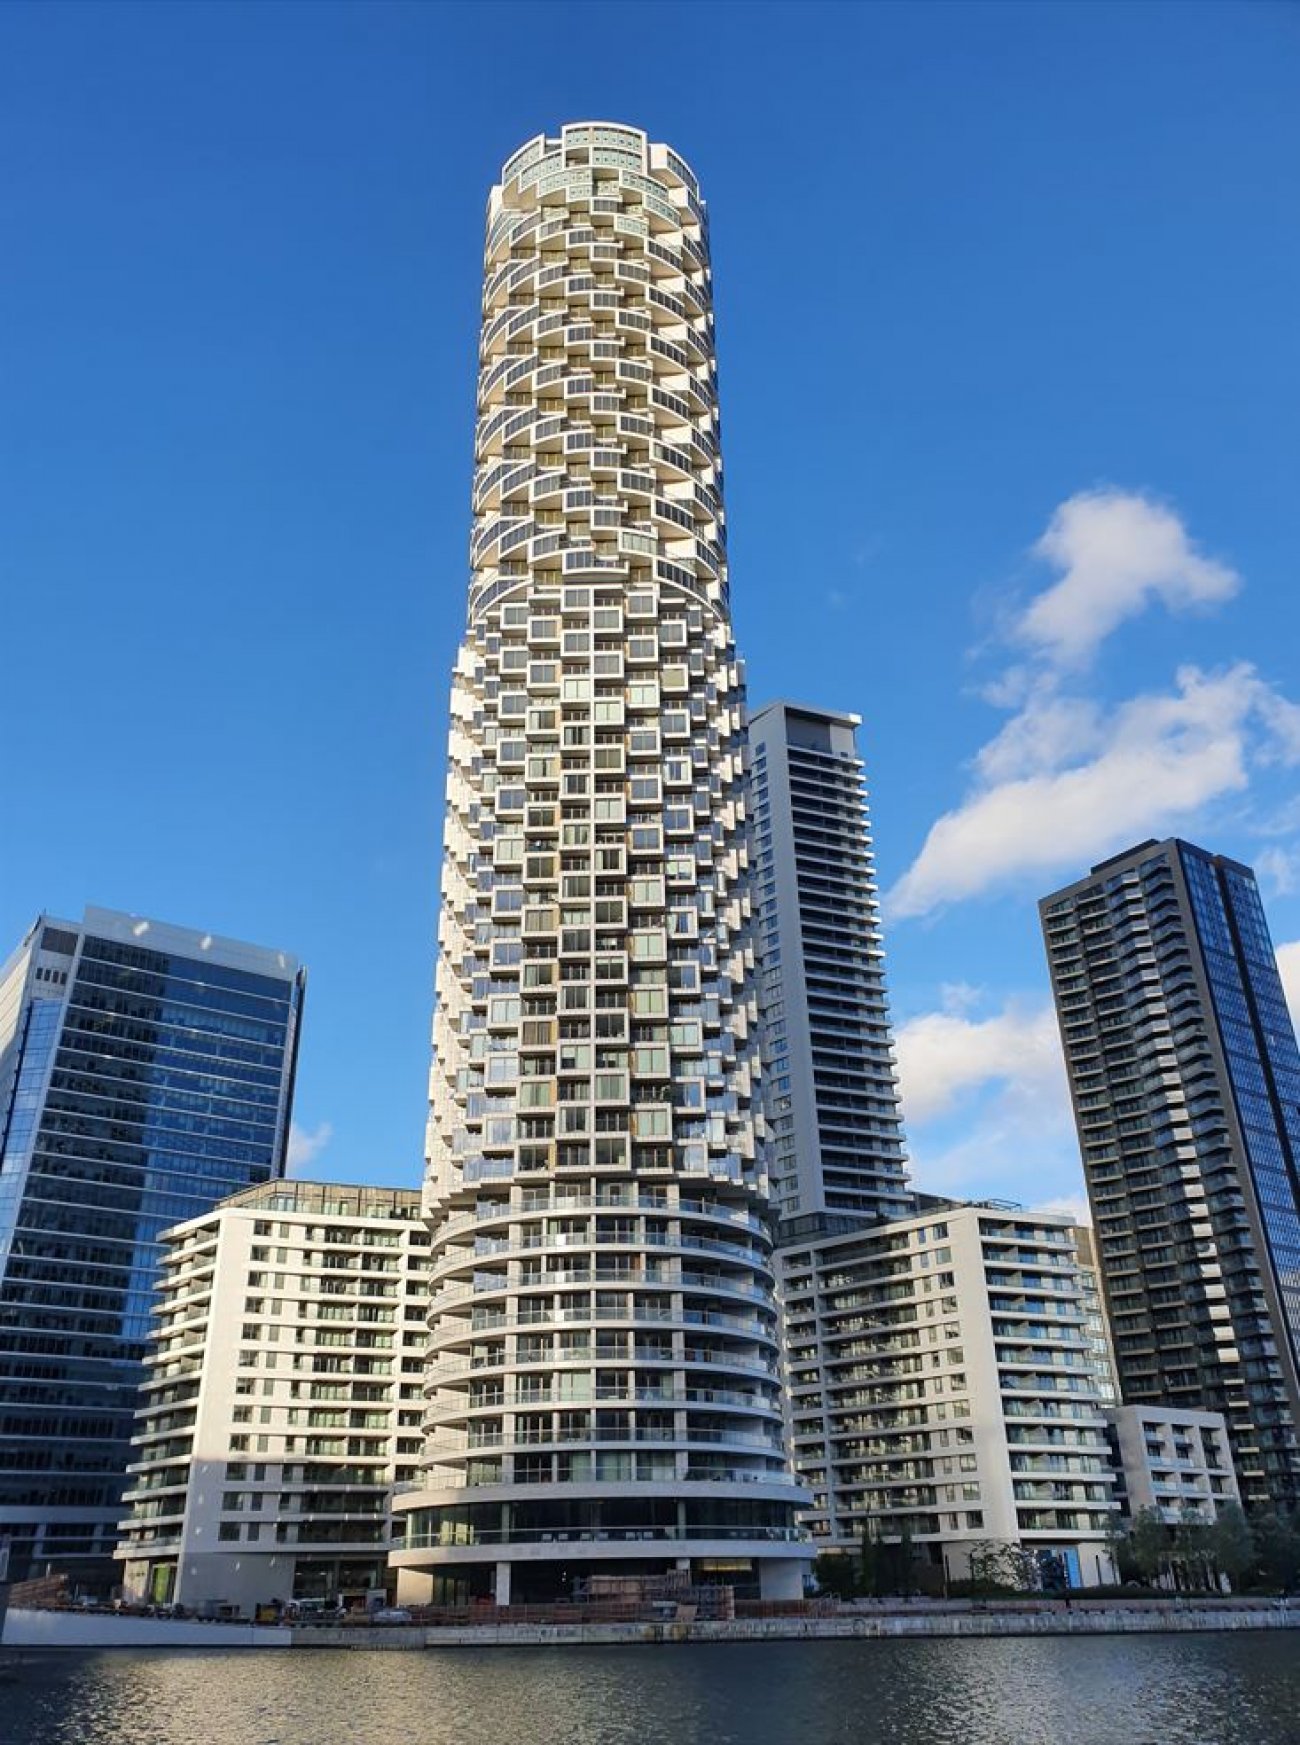 N°9 : One Park Drive, Londres, Royaume-Uni. 205 mètres et 58 étages. Architecte : Herzog & de Meuron, Adamson Associates © Altan Akbiyik